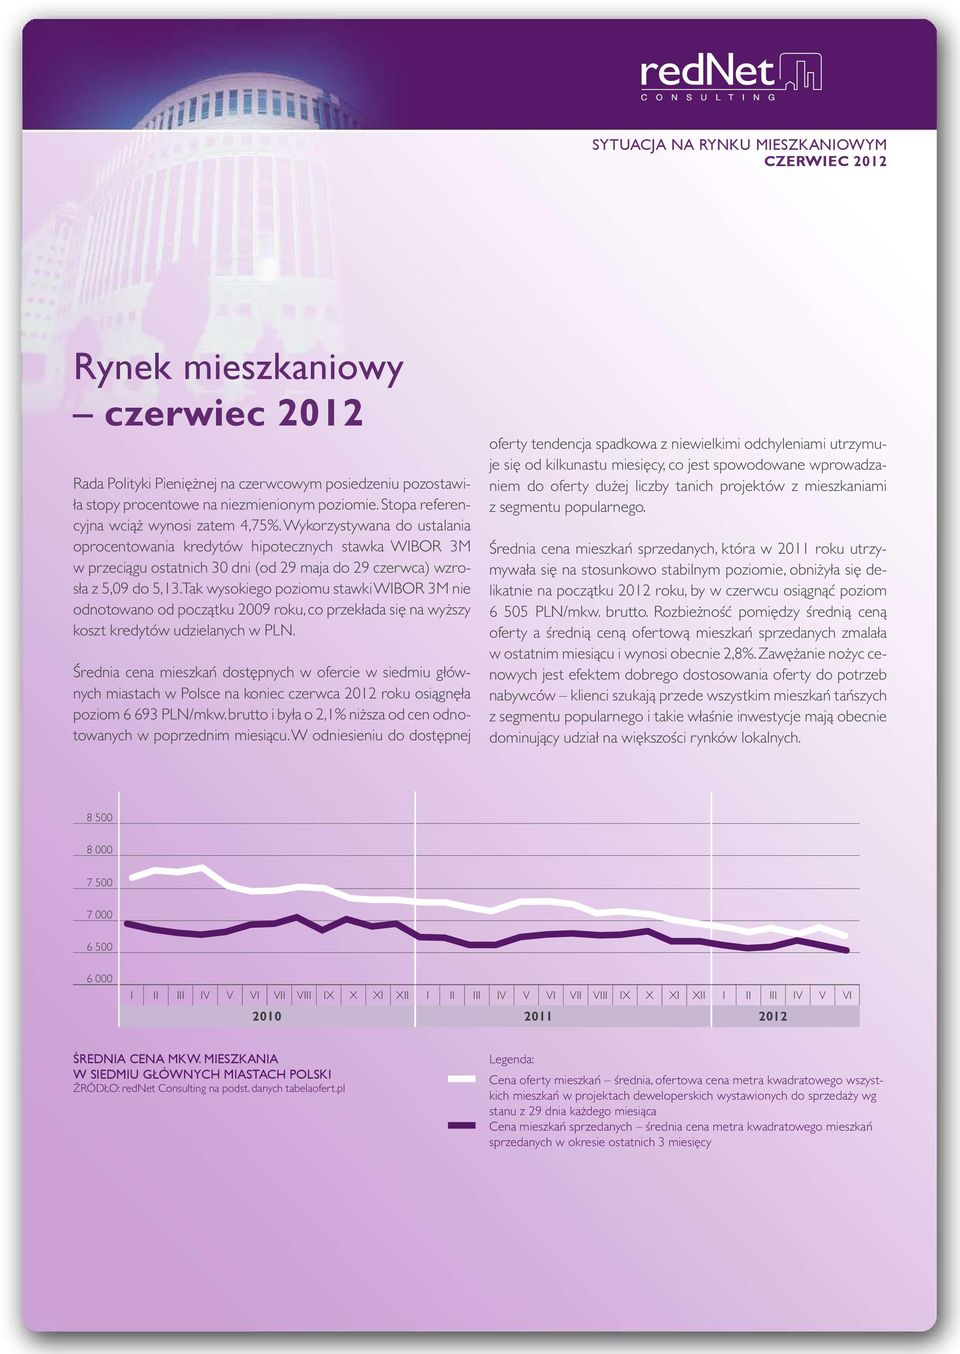 Tak wysokiego poziomu stawki WIBOR 3M nie odnotowano od początku 2009 roku, co przekłada się na wyższy koszt kredytów udzielanych w PLN.